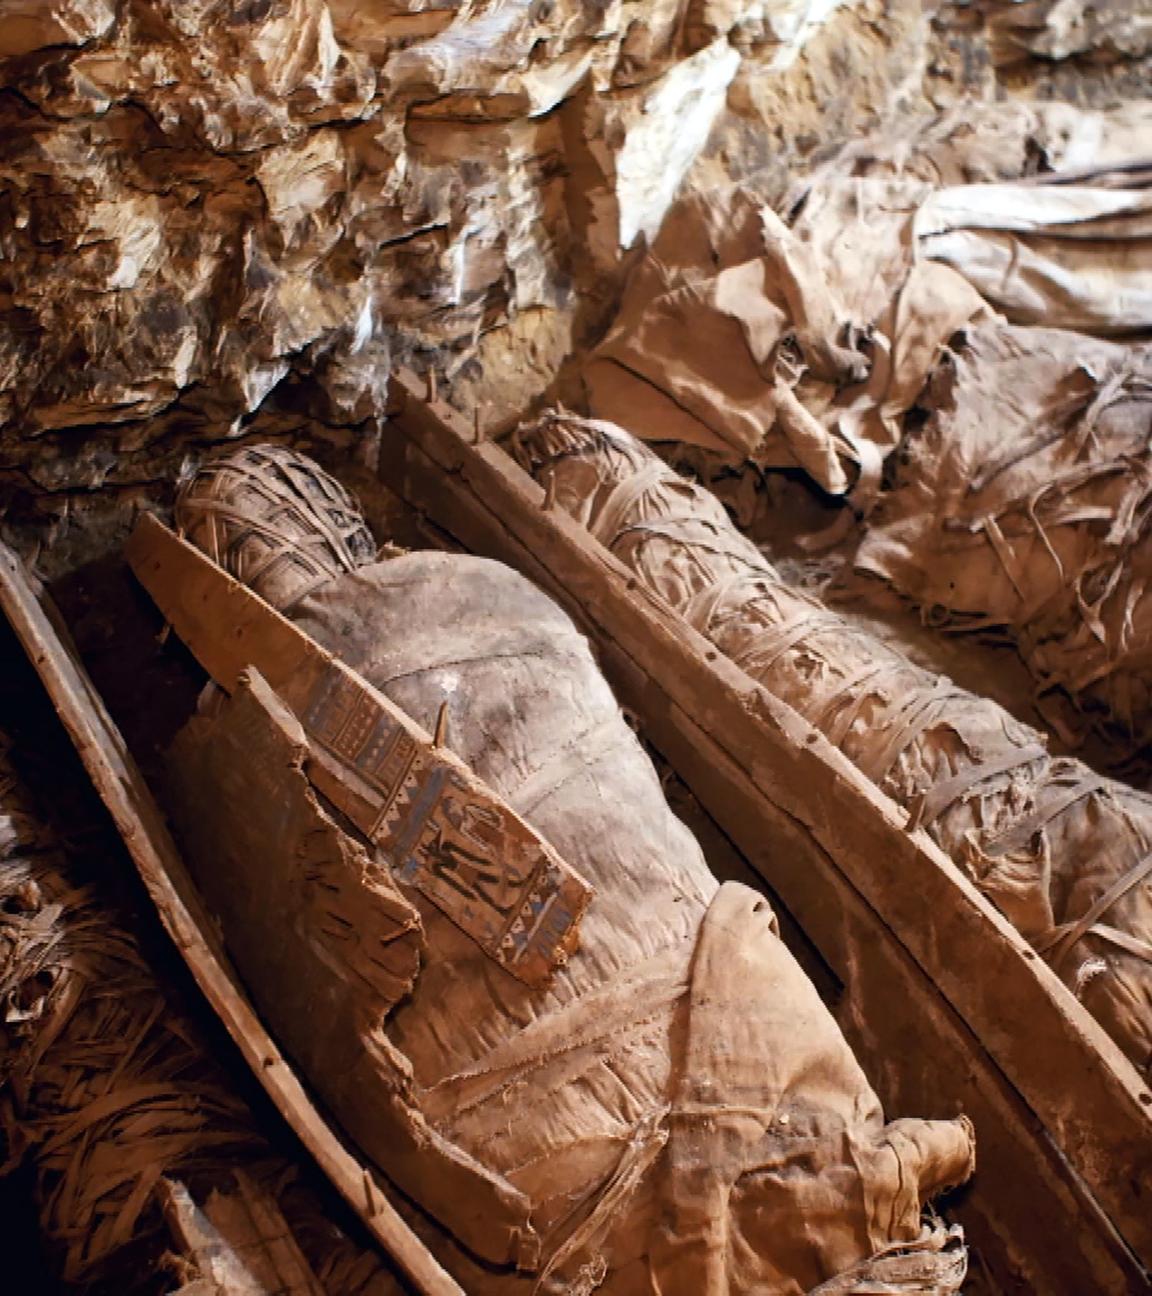 Sechs eingewickelte Mumien liegen eng beieinander auf dem Boden einer Grabkammer.